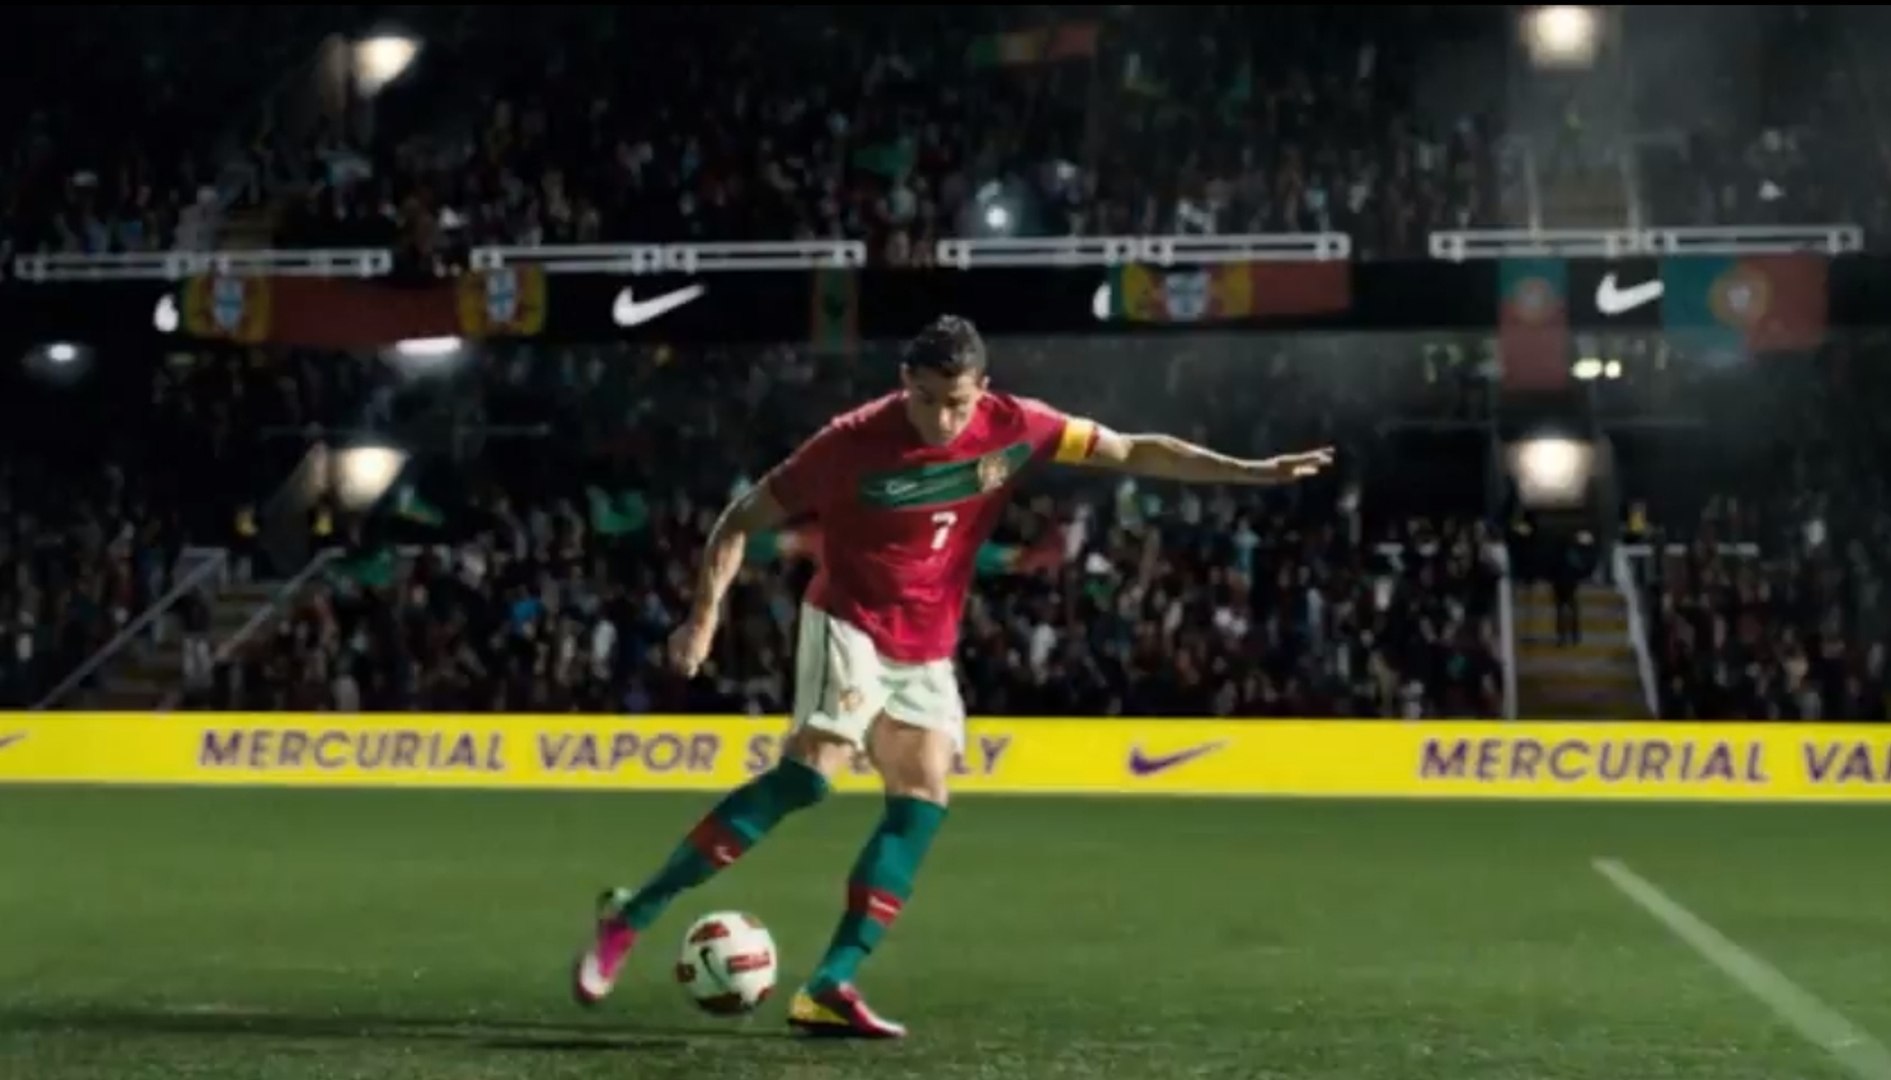 La nouvelle pub Nike de Cristiano Ronaldo pour ses chaussures Mercurial -  Vidéo Dailymotion